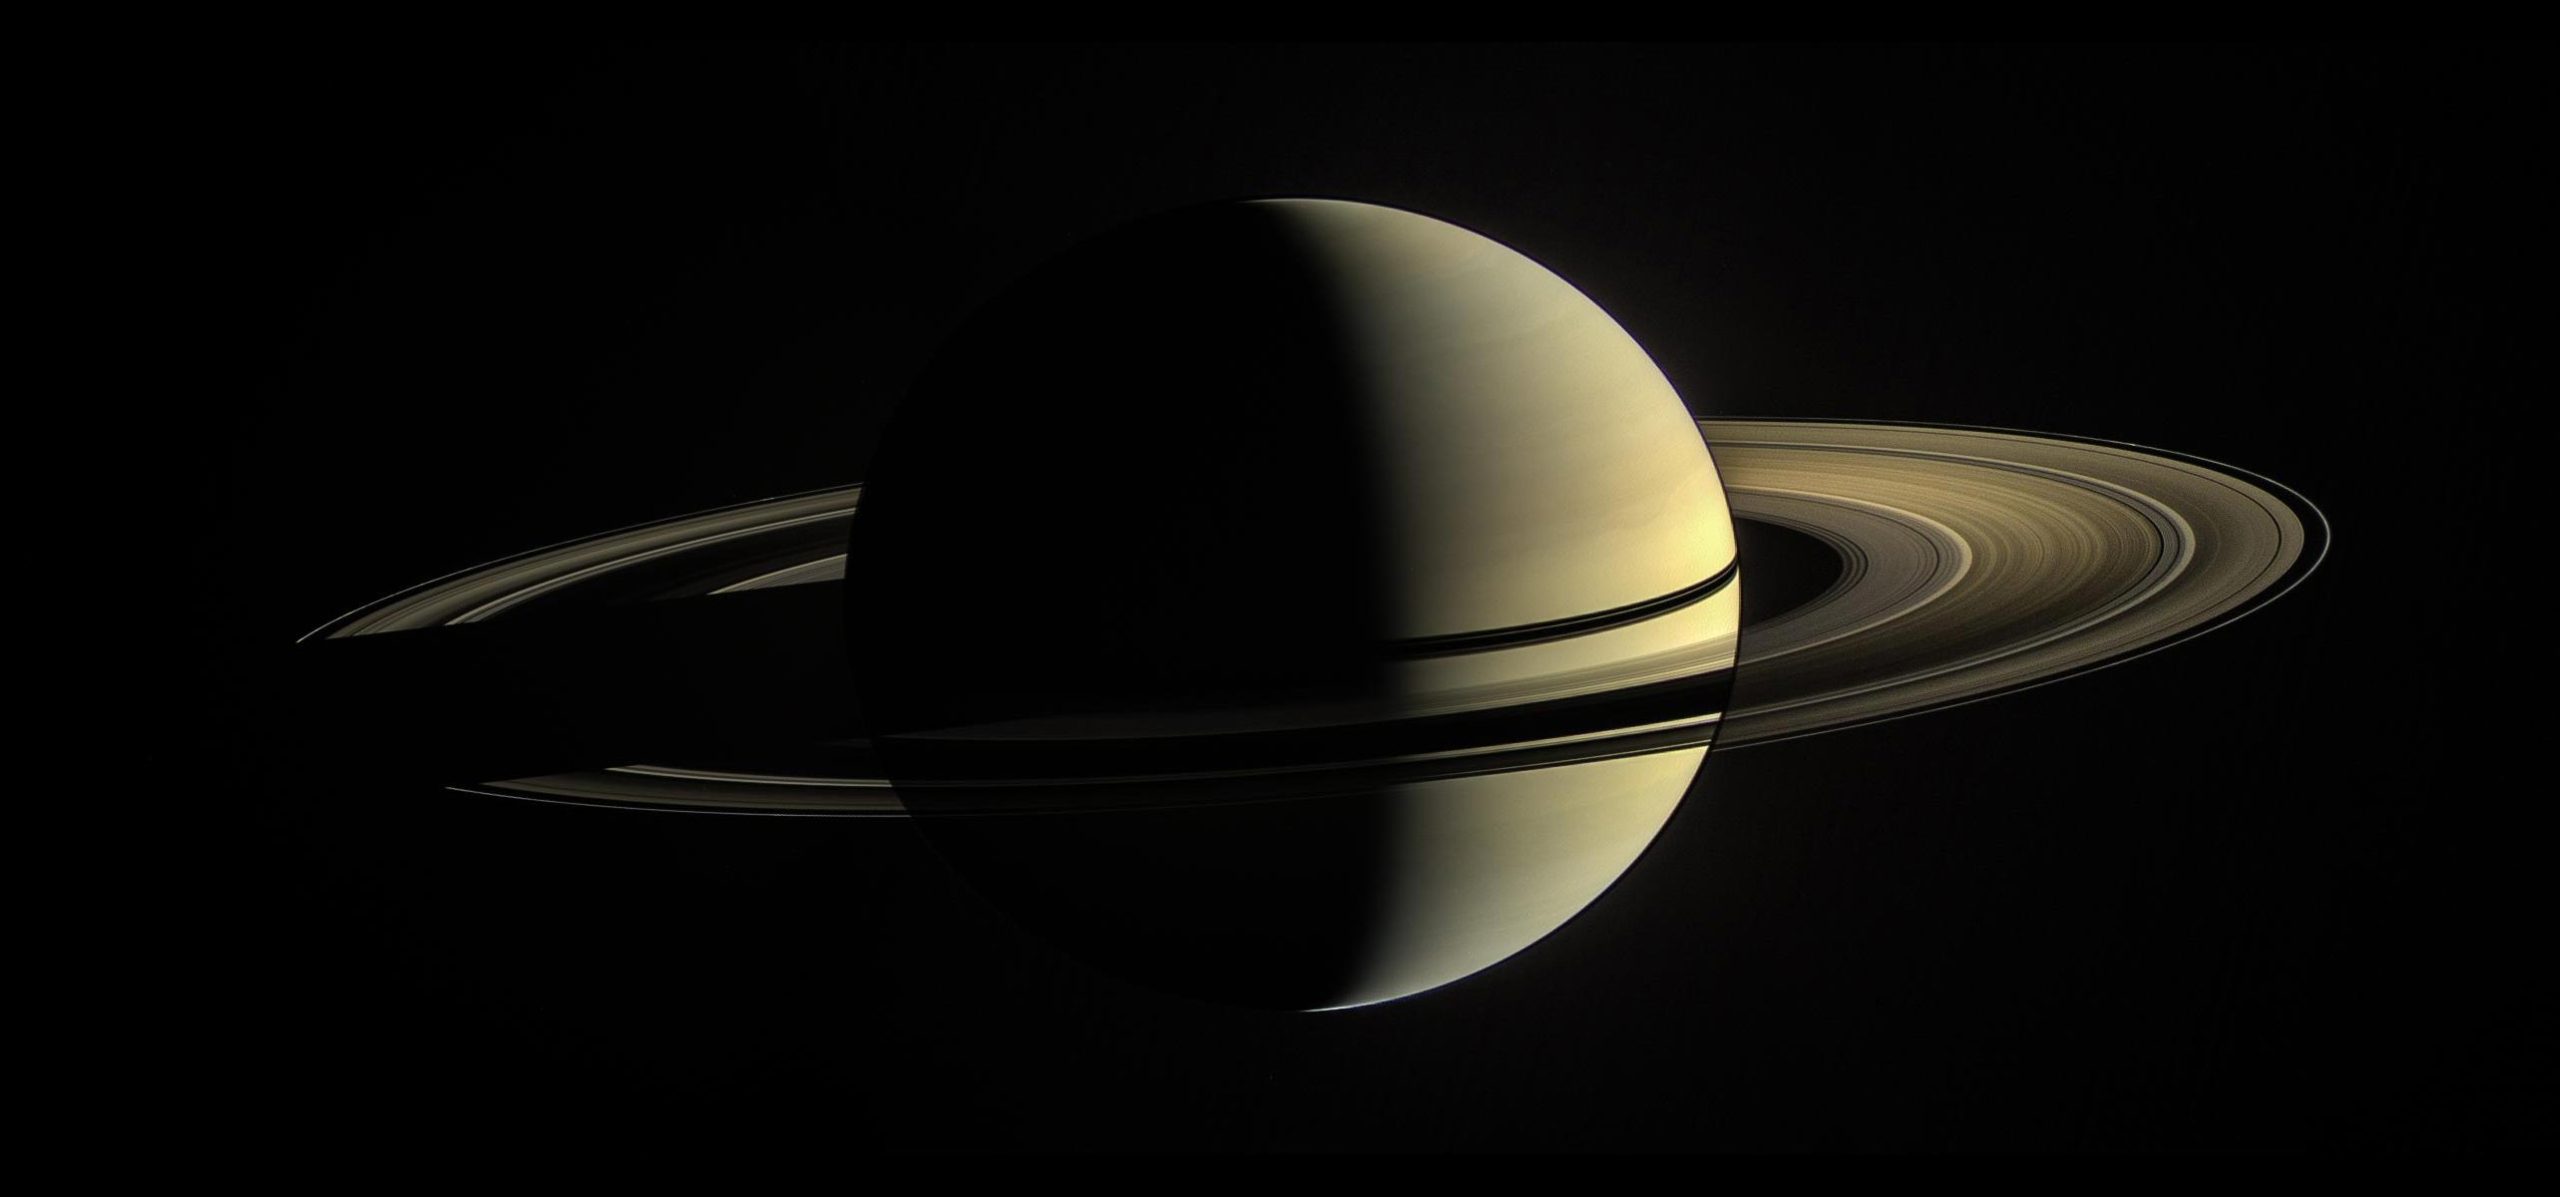 Os anéis de Saturno são pequenos e podem desaparecer rapidamente